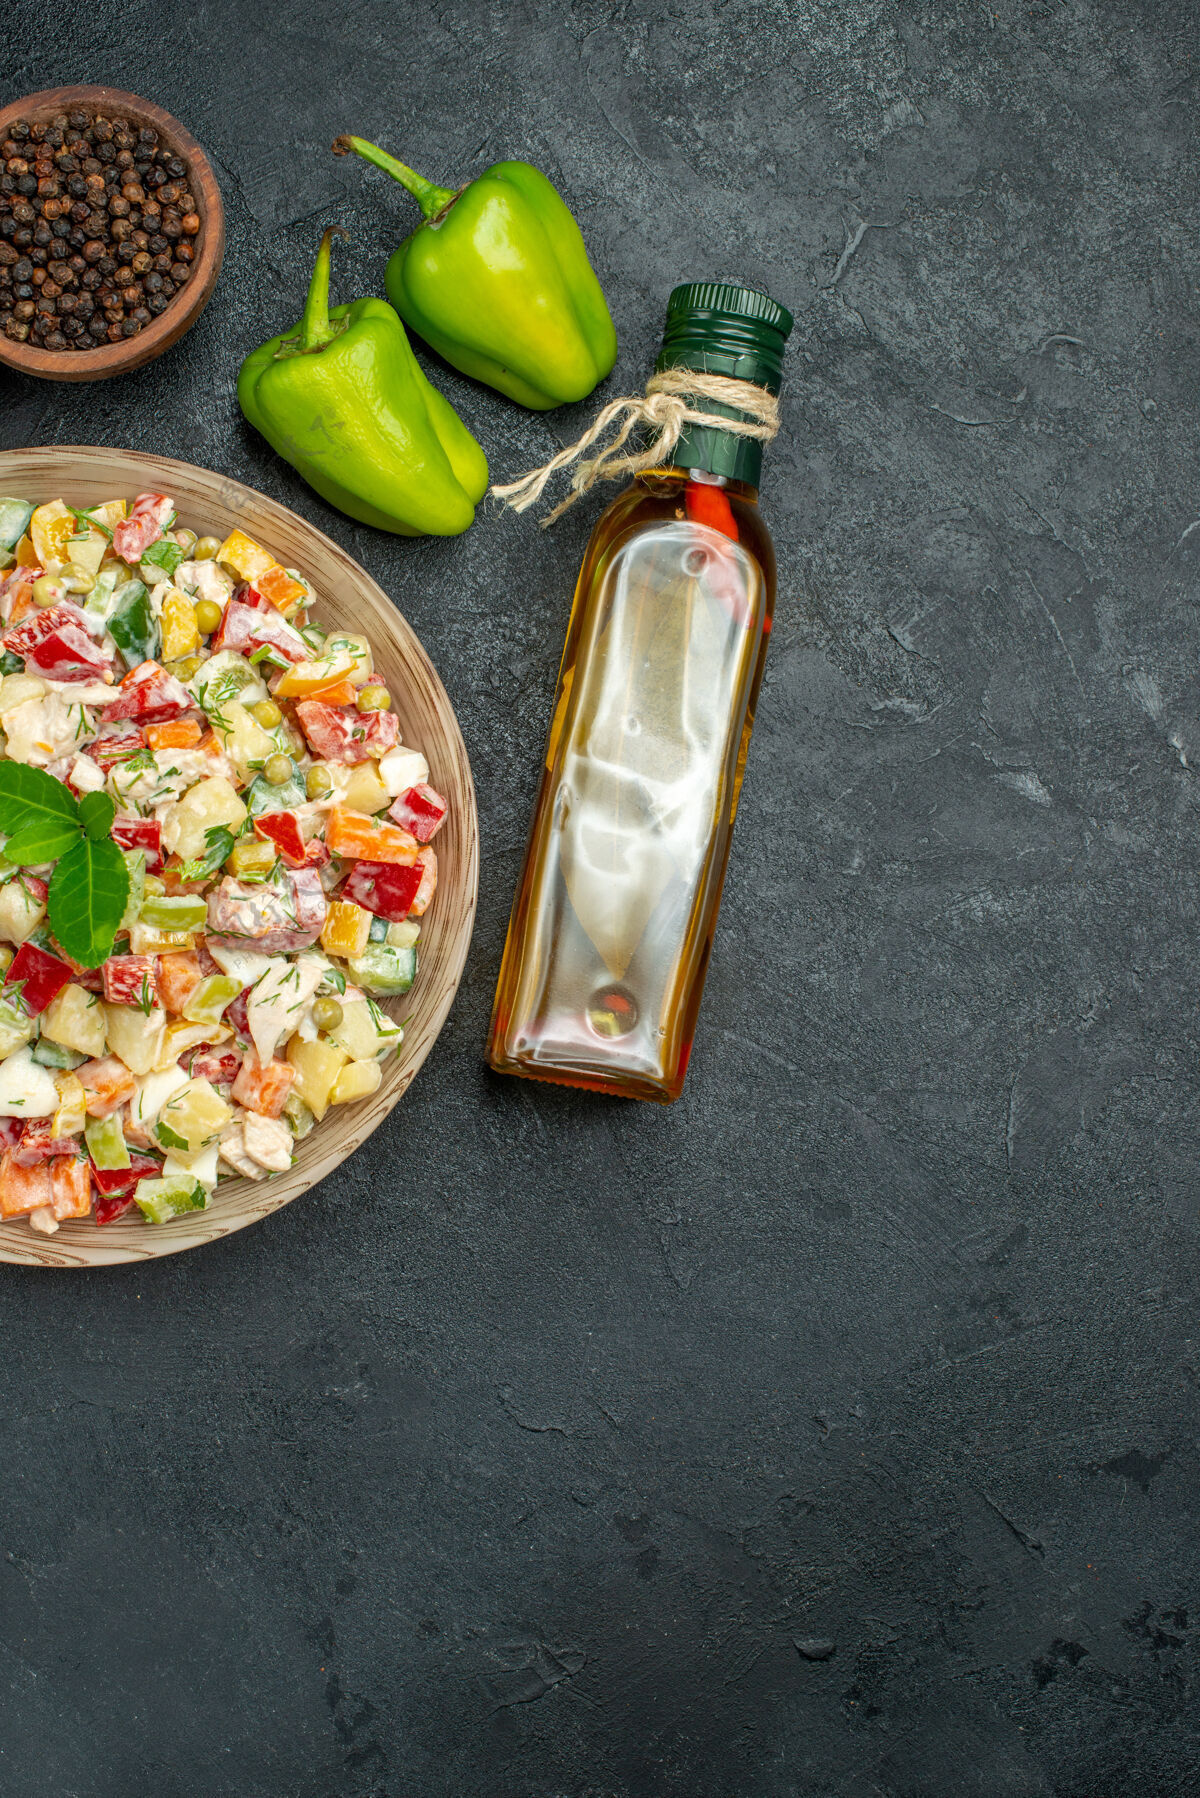 蔬菜一碗蔬菜沙拉的俯视图 灰色背景上有一碗蔬菜和胡椒油瓶以及甜椒碗美食胡椒